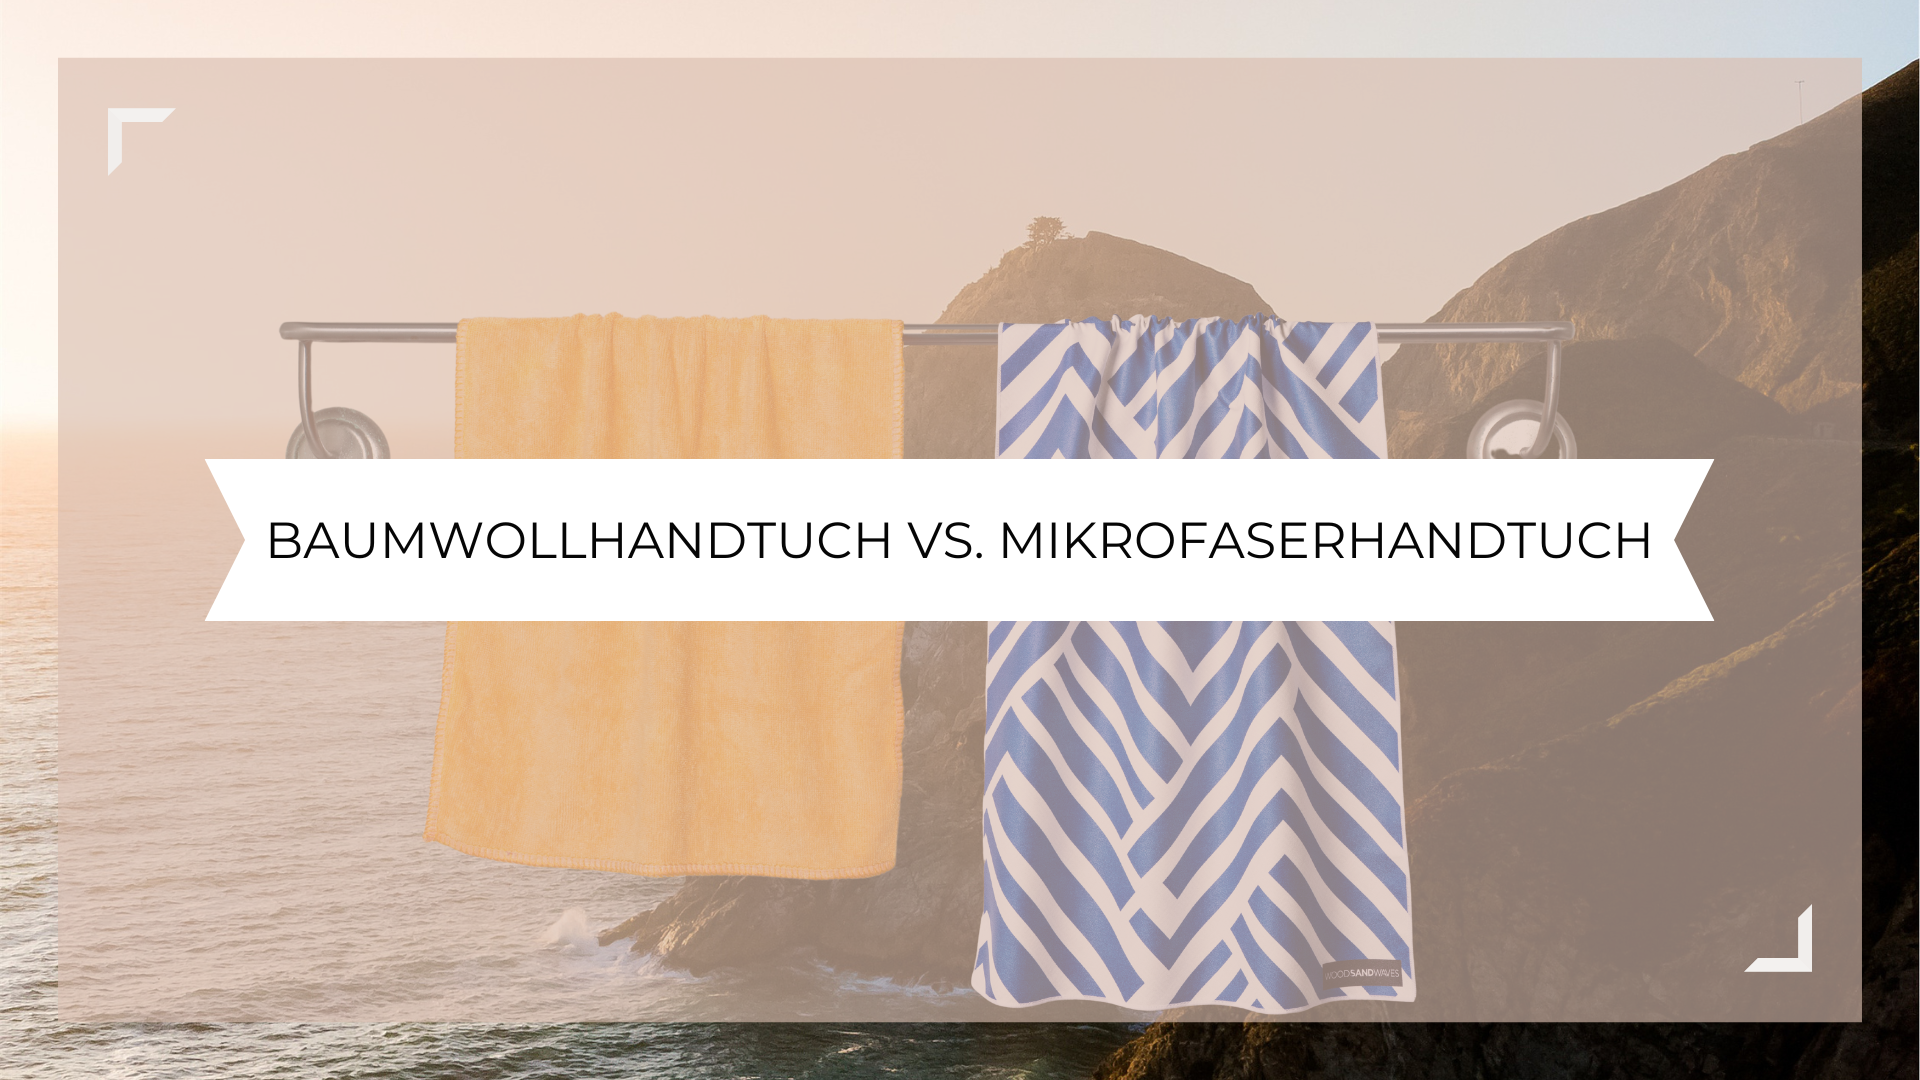 Mikrofaserhandtücher oder Baumwollhandtücher?